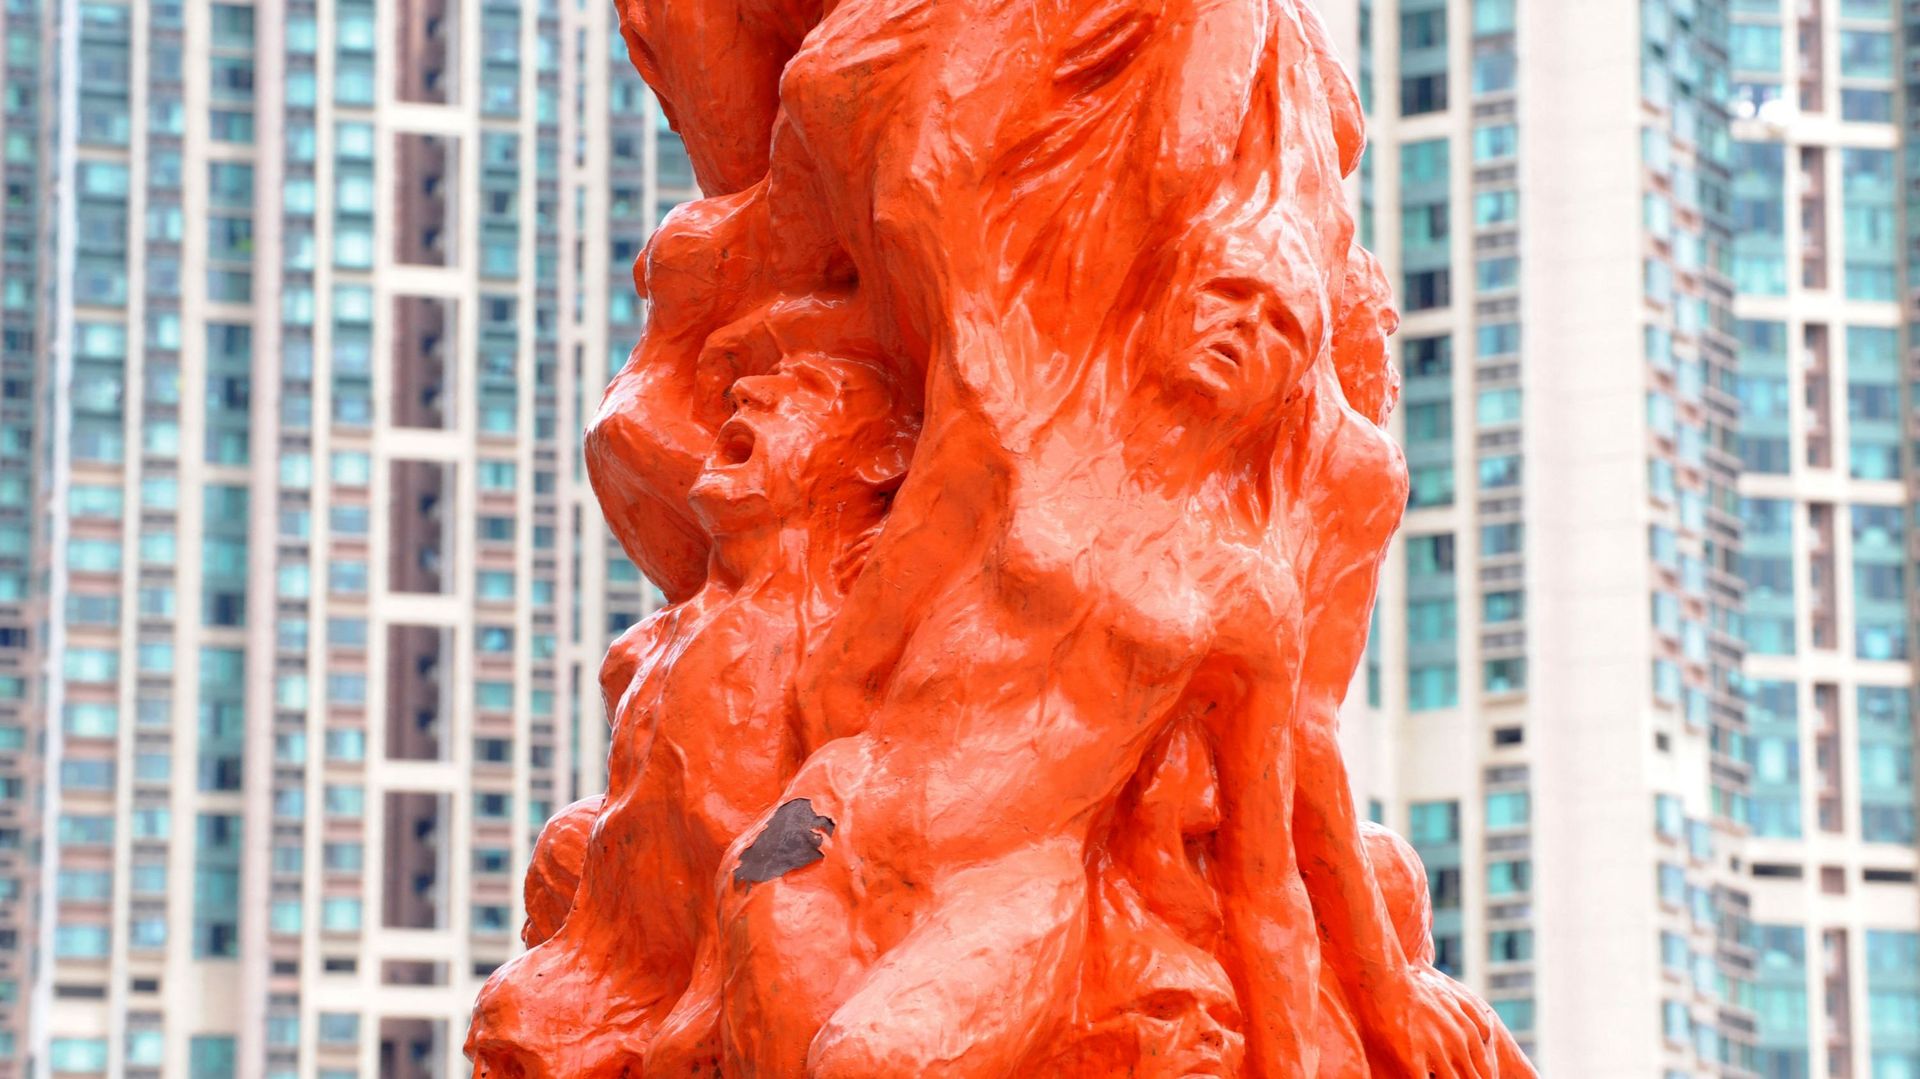 Le "pilier de la honte", une statue en hommage aux victimes de l'incident du 4 juin 1989 à Pékin, est exposé dans une université de Hong Kong le 27 mai 2009.